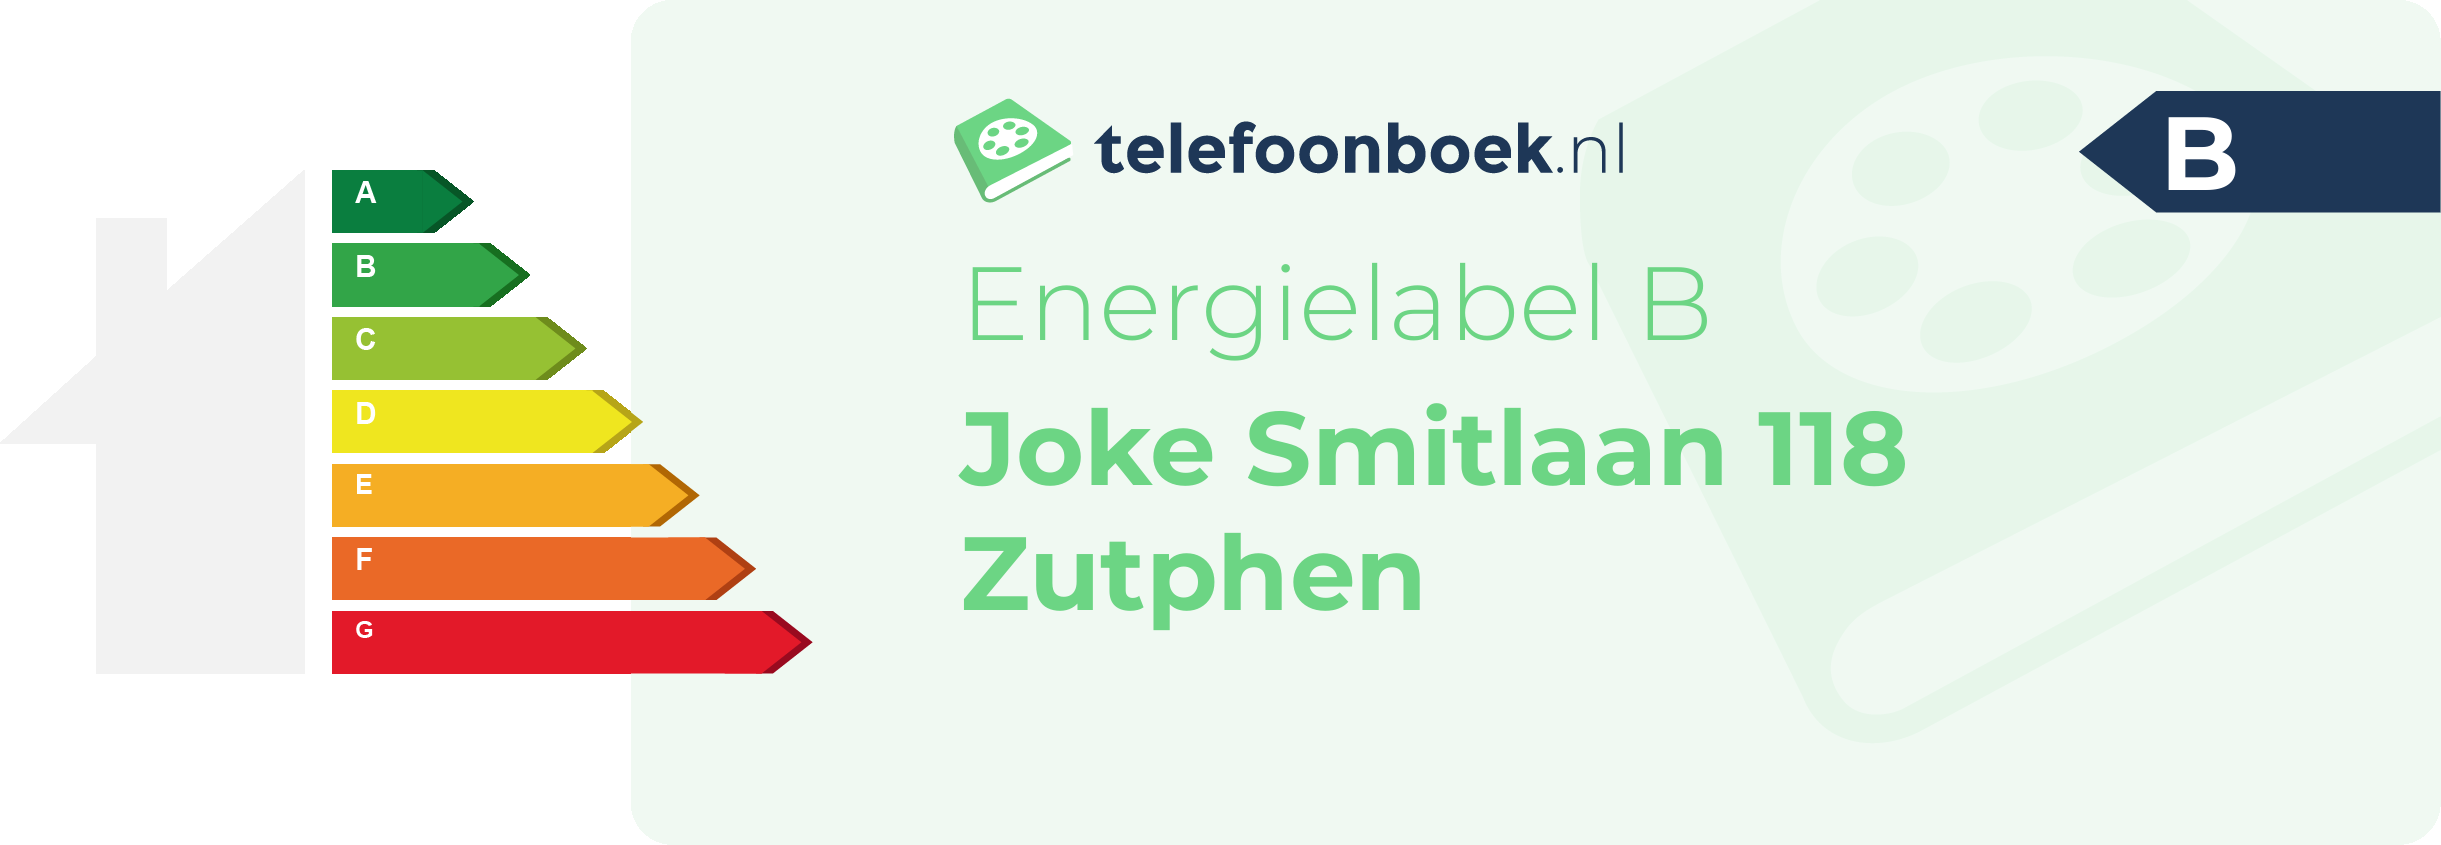 Energielabel Joke Smitlaan 118 Zutphen